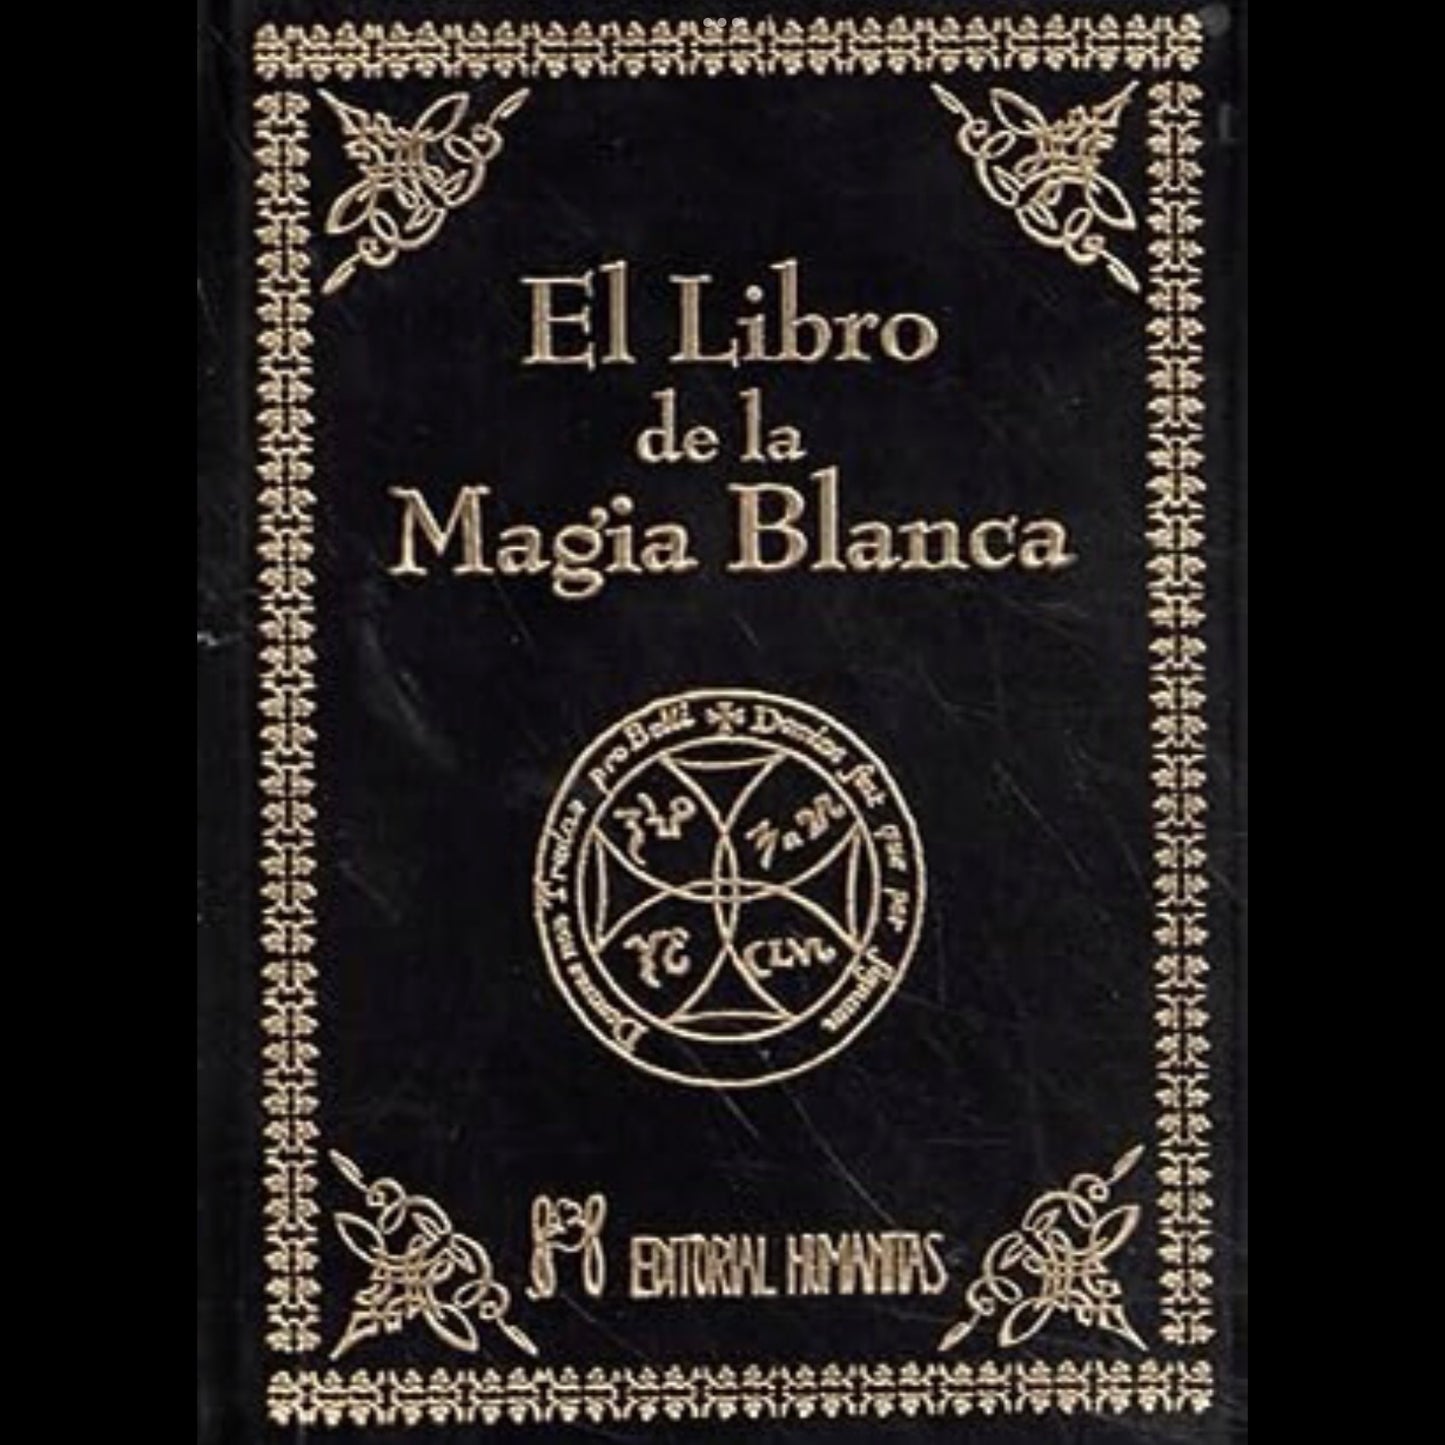 El libro de la Magia Blanca